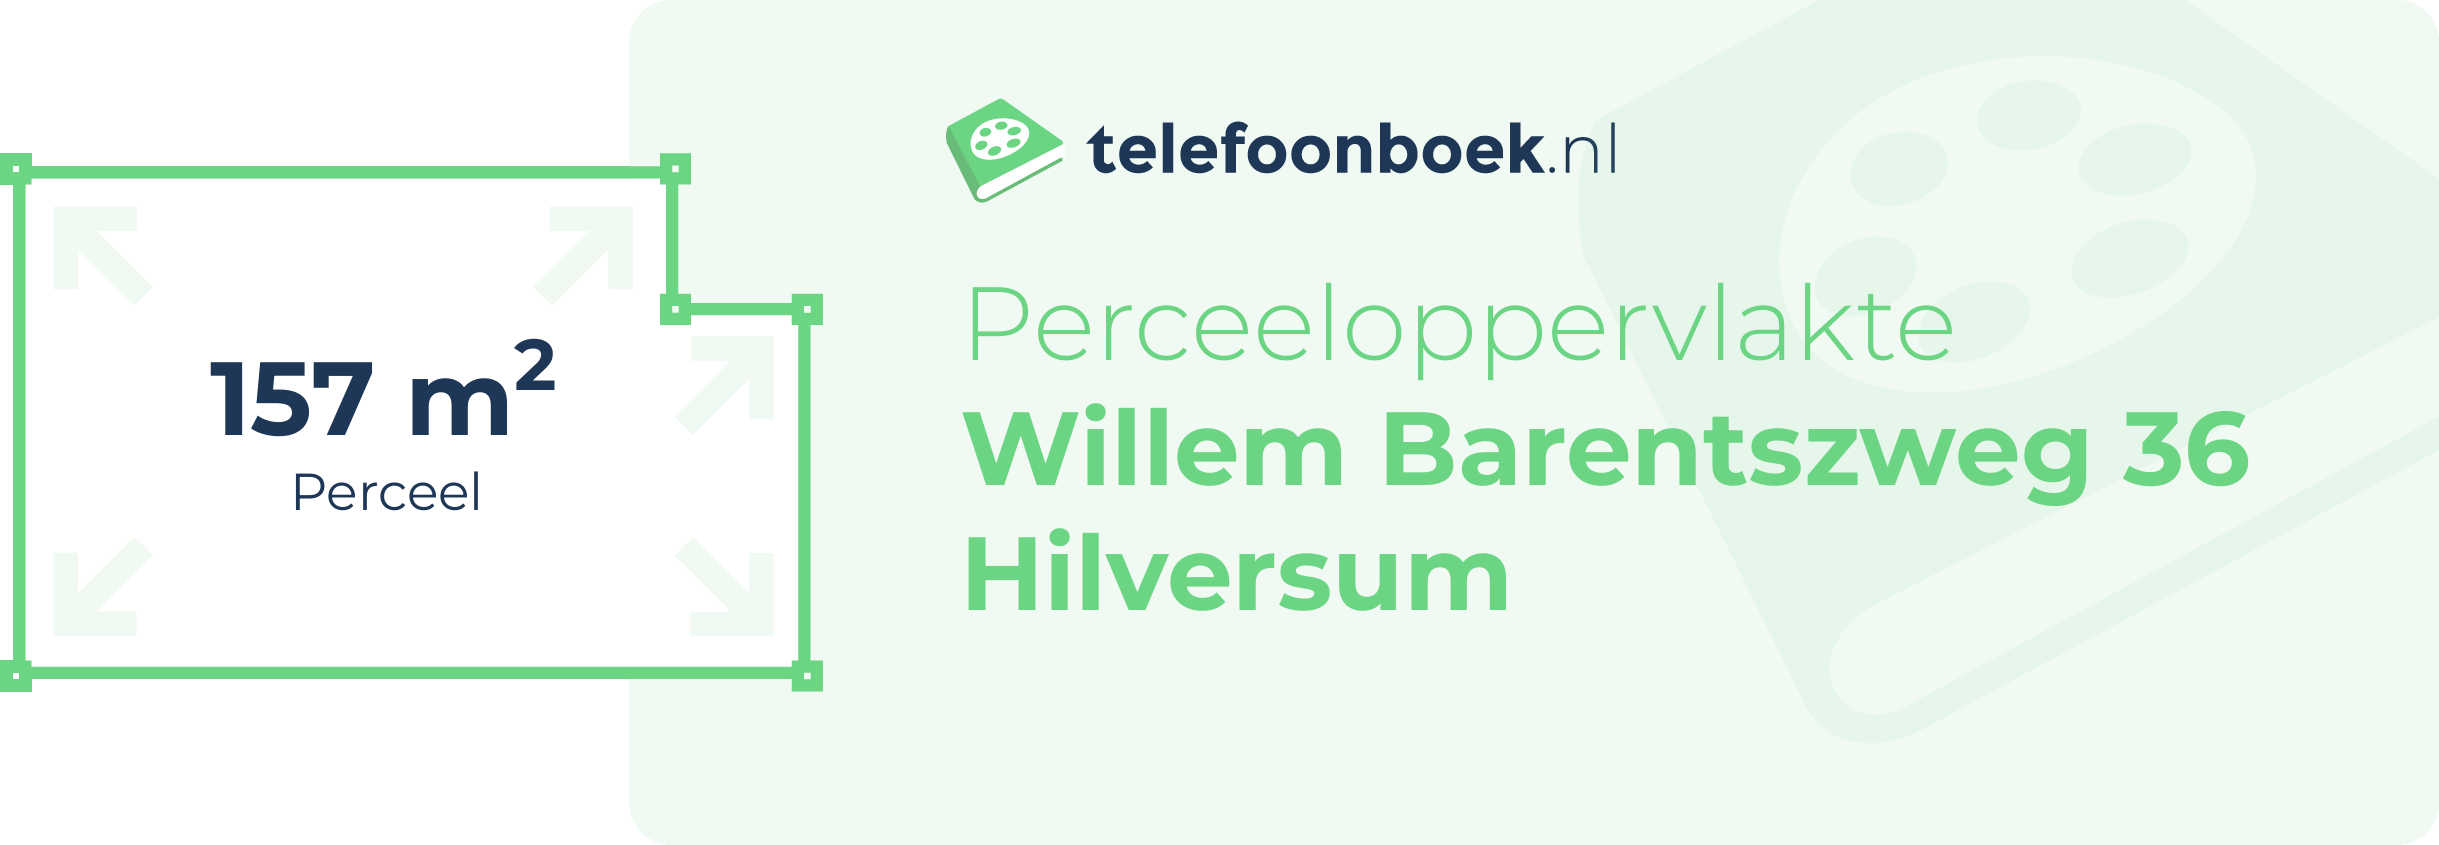 Perceeloppervlakte Willem Barentszweg 36 Hilversum